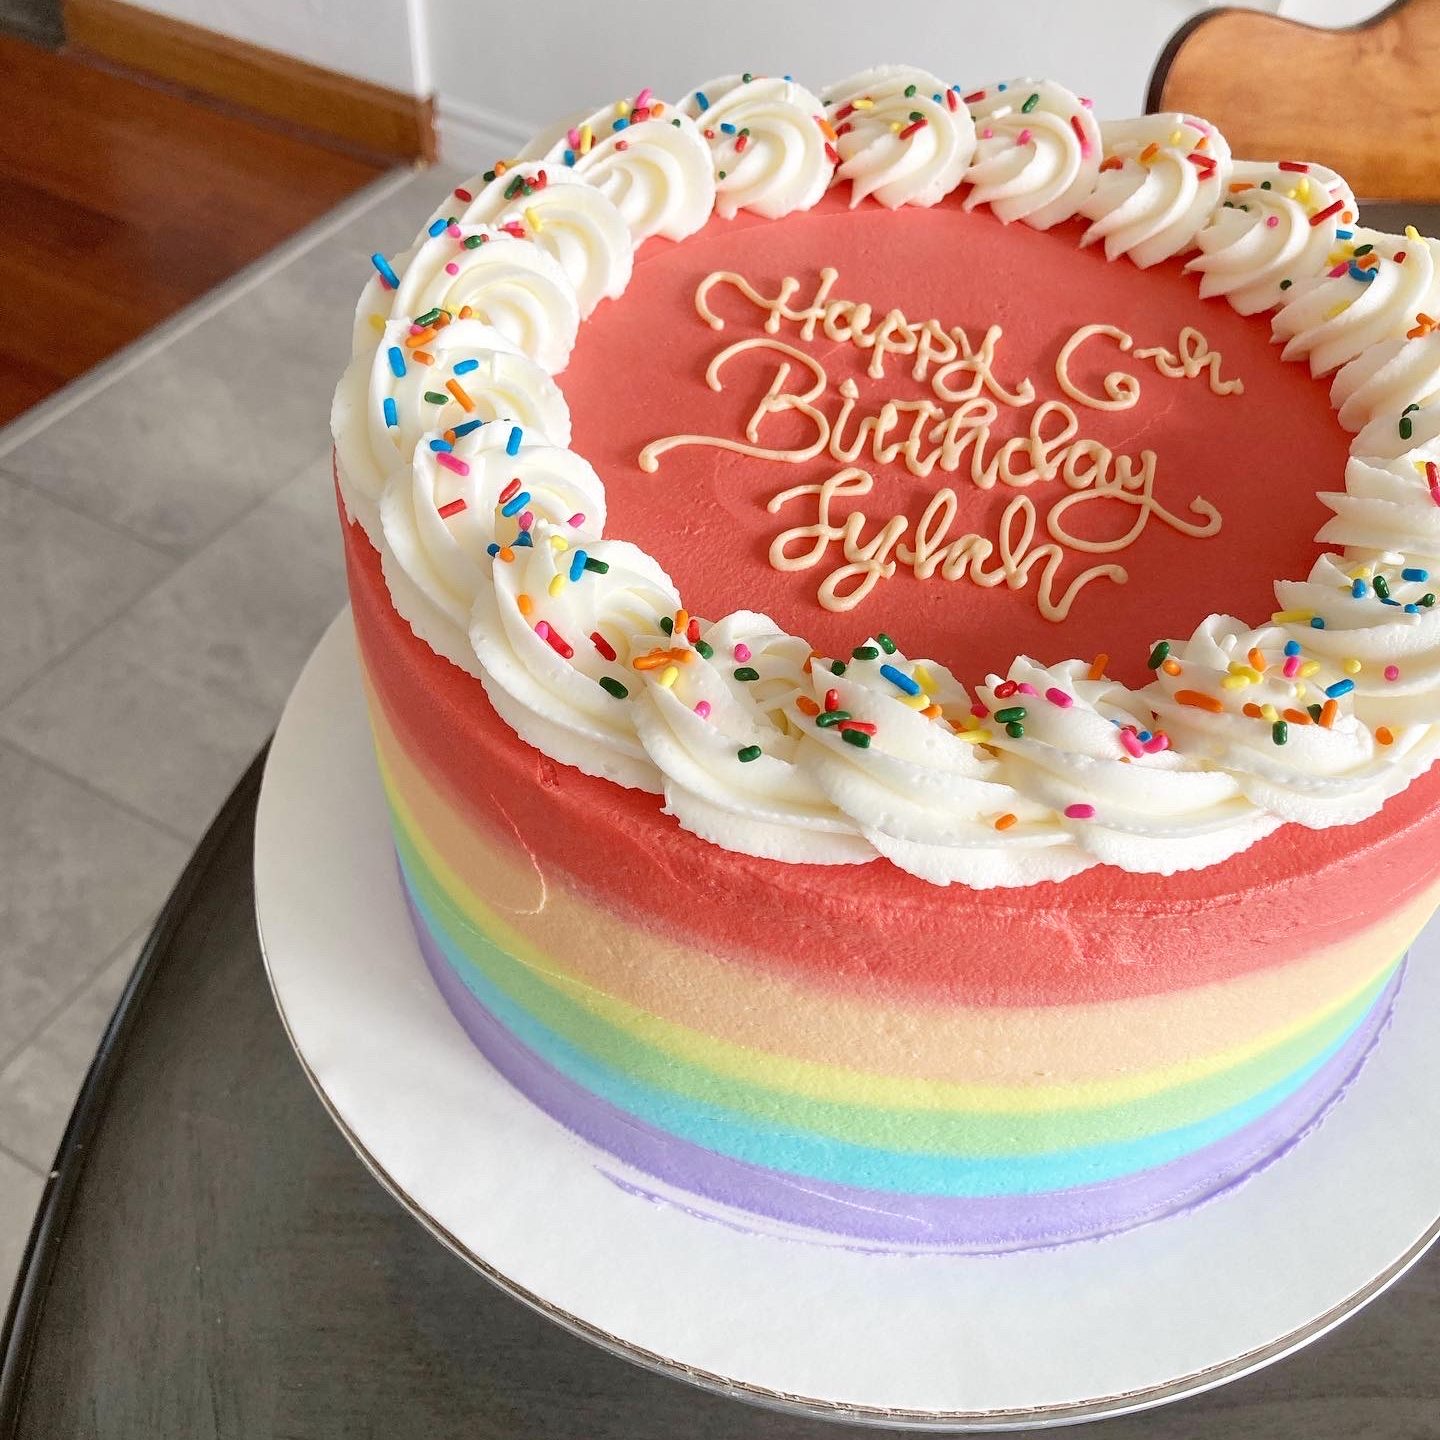 Rainbow birthday cake on a table